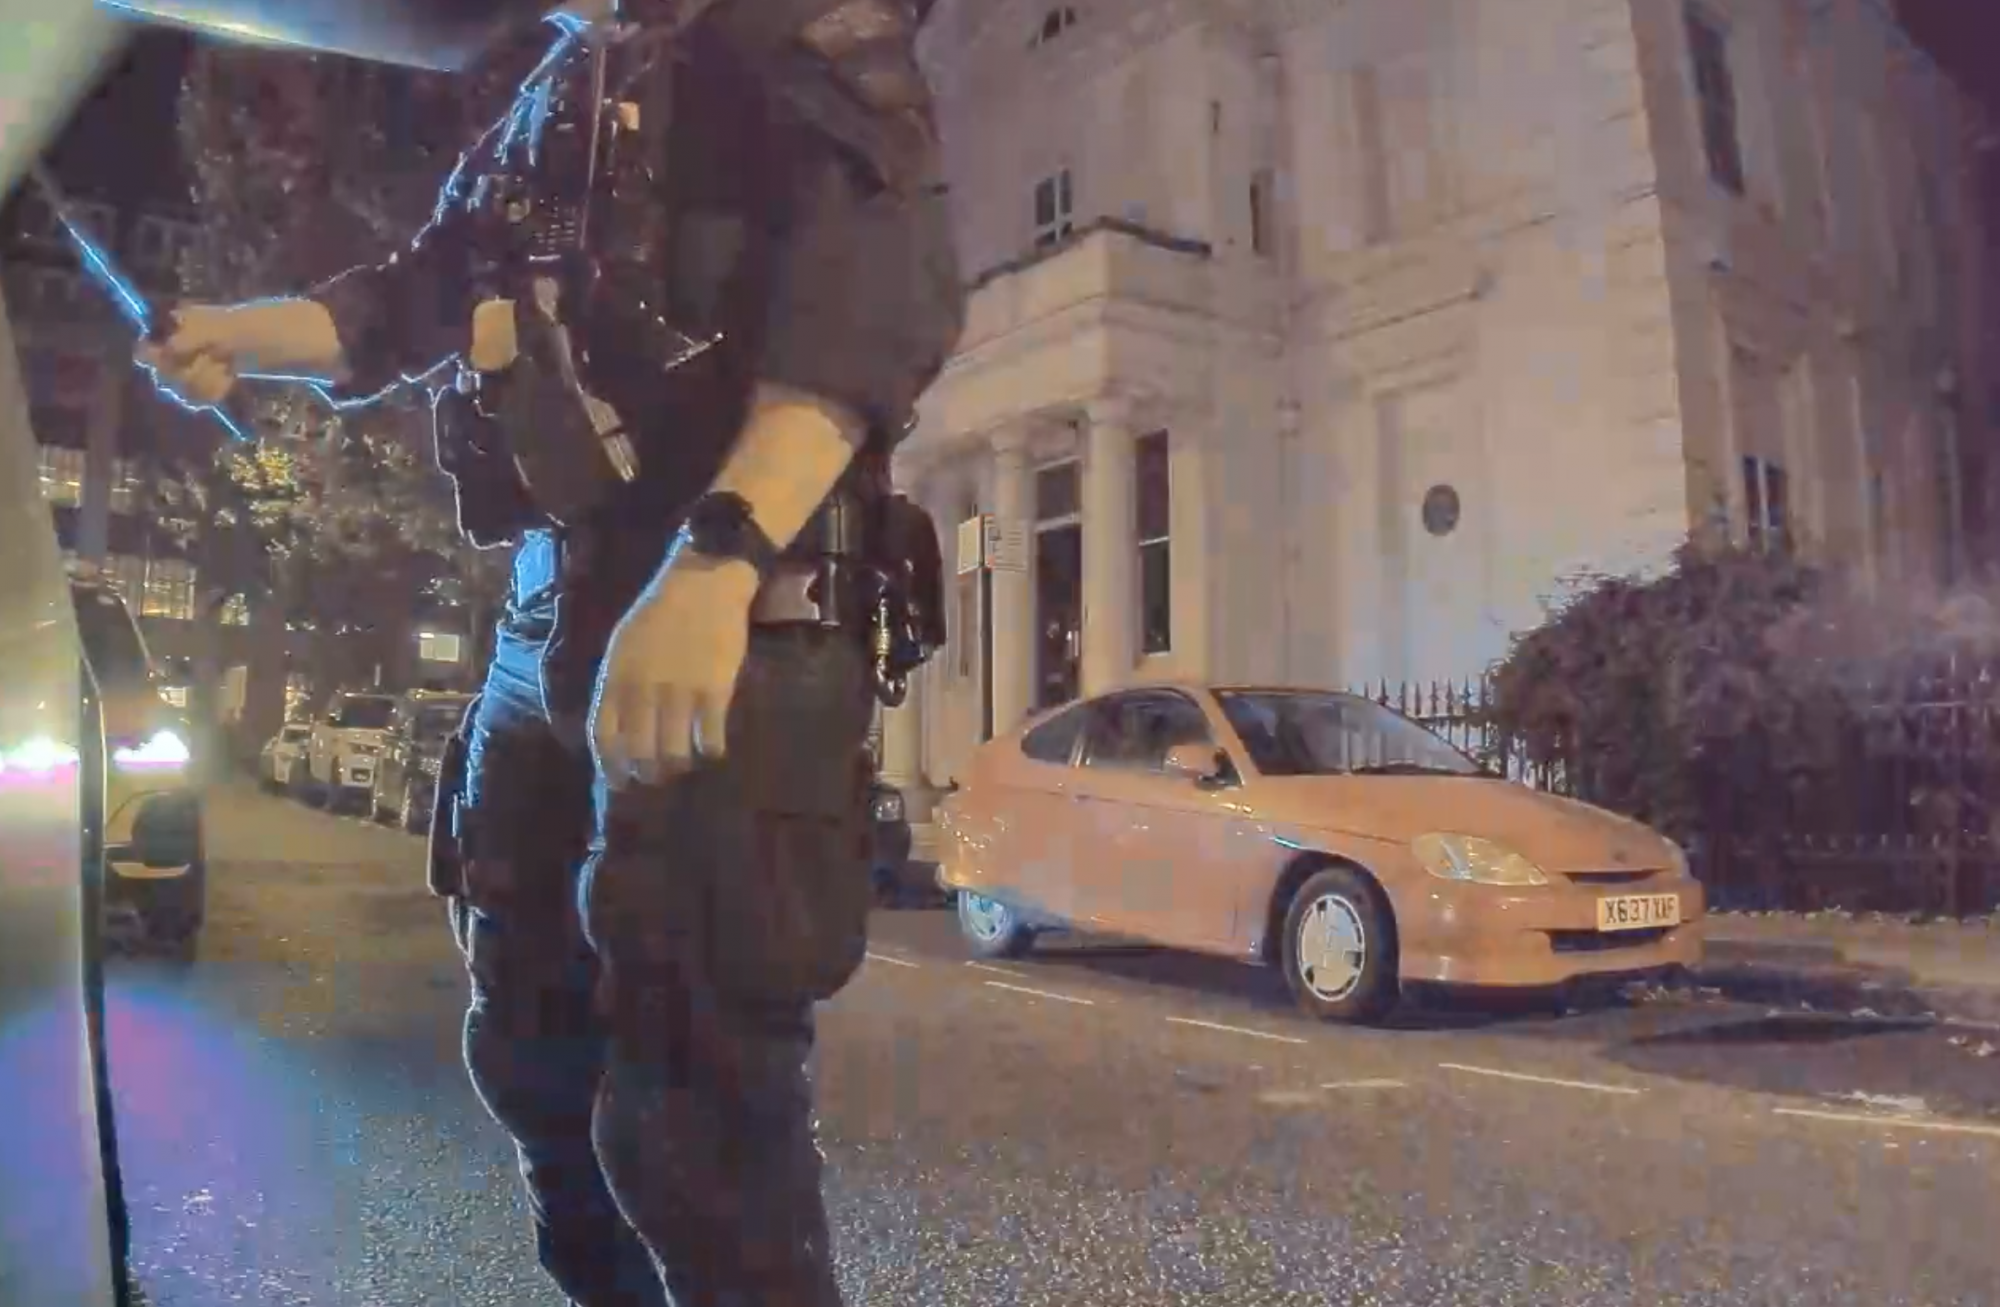 Egy portugál futó szerint a bőrszíne miatt állították meg autójával Londonban a rendőrök